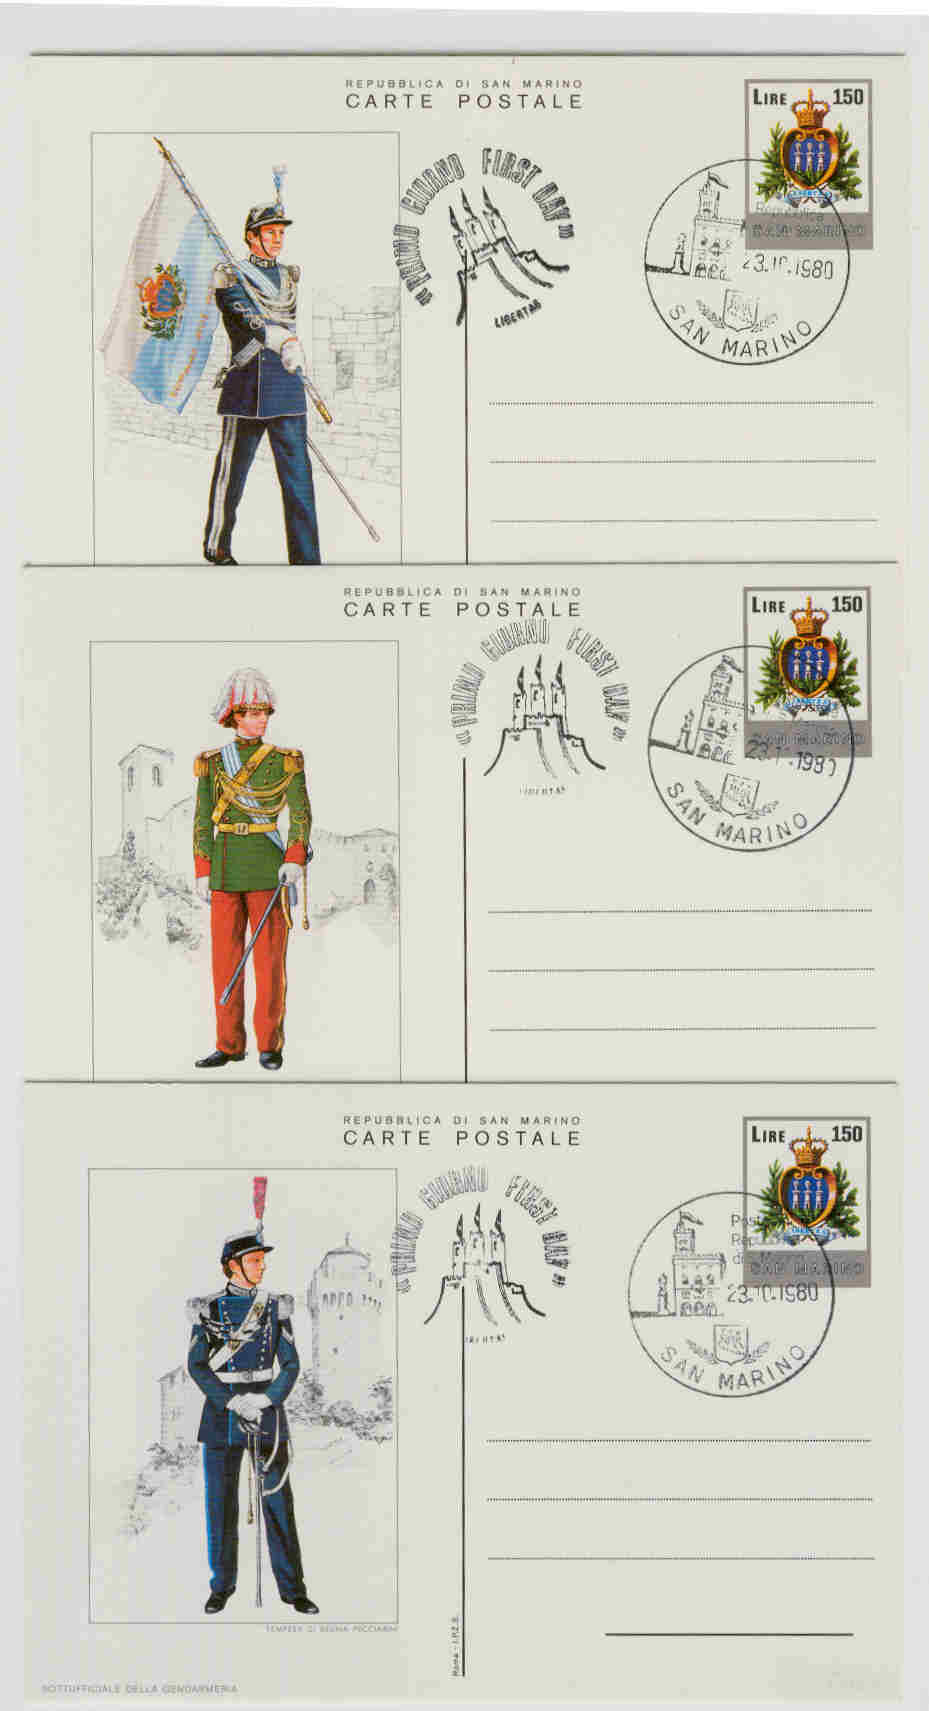 10975 - San Marino: cartoline postali C 49 in serie completa fdc: Uniformi Militari 2 serie valori da 150